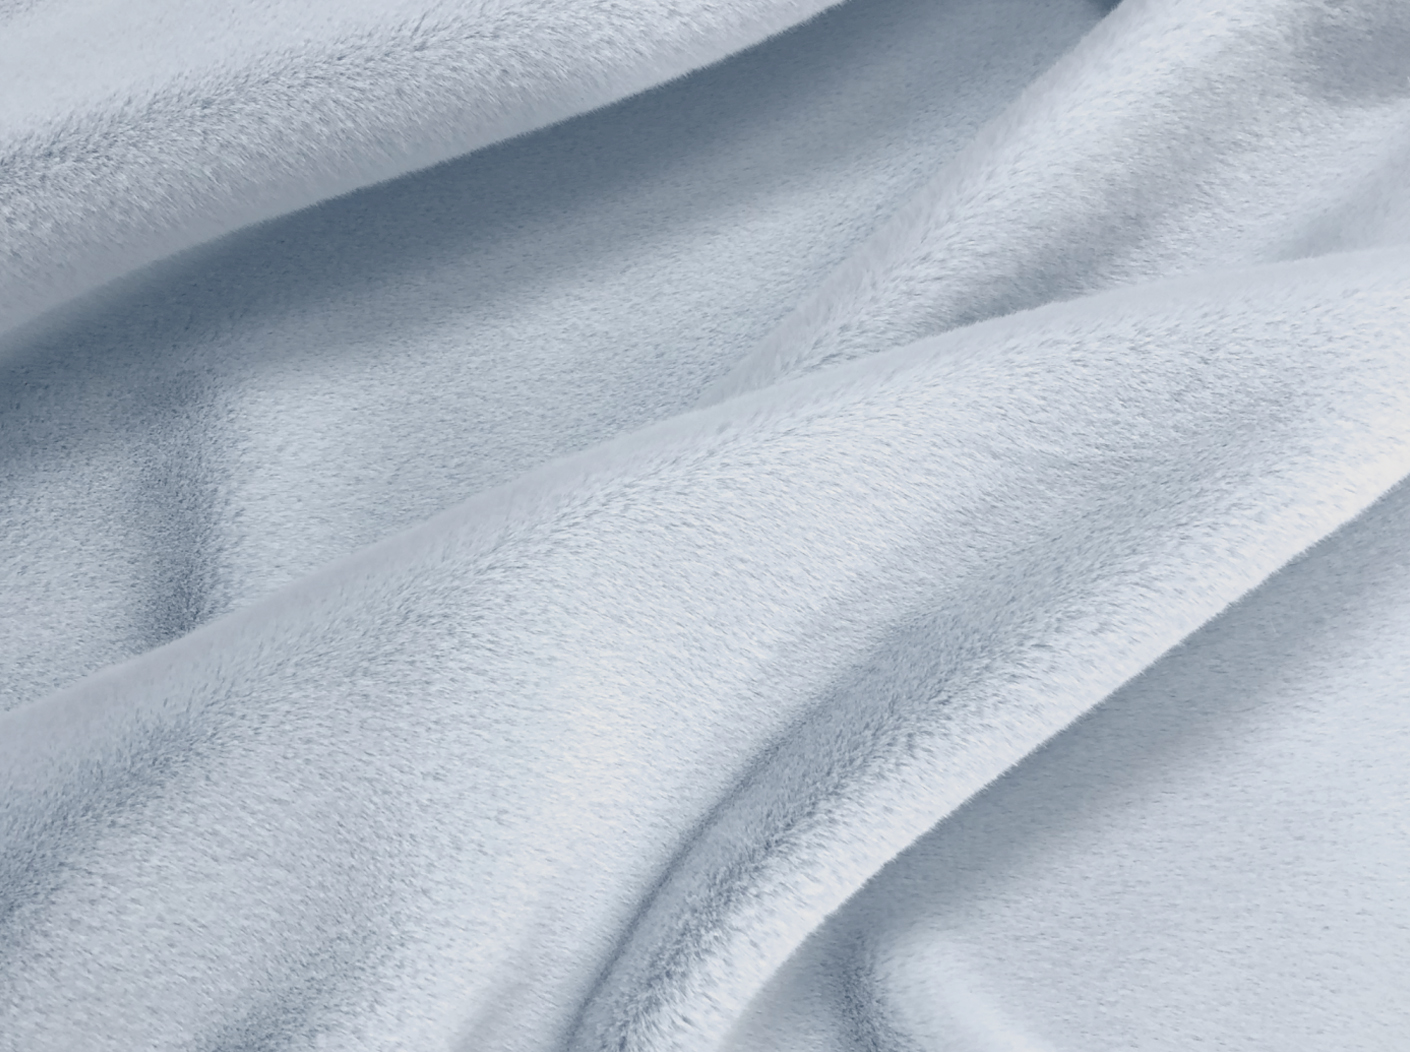 Экомех Mirofox под Скандинавскую норку SAGA Royal коллекции Slim Coat - весна/осень цвет - Арктический лед / Mirofox